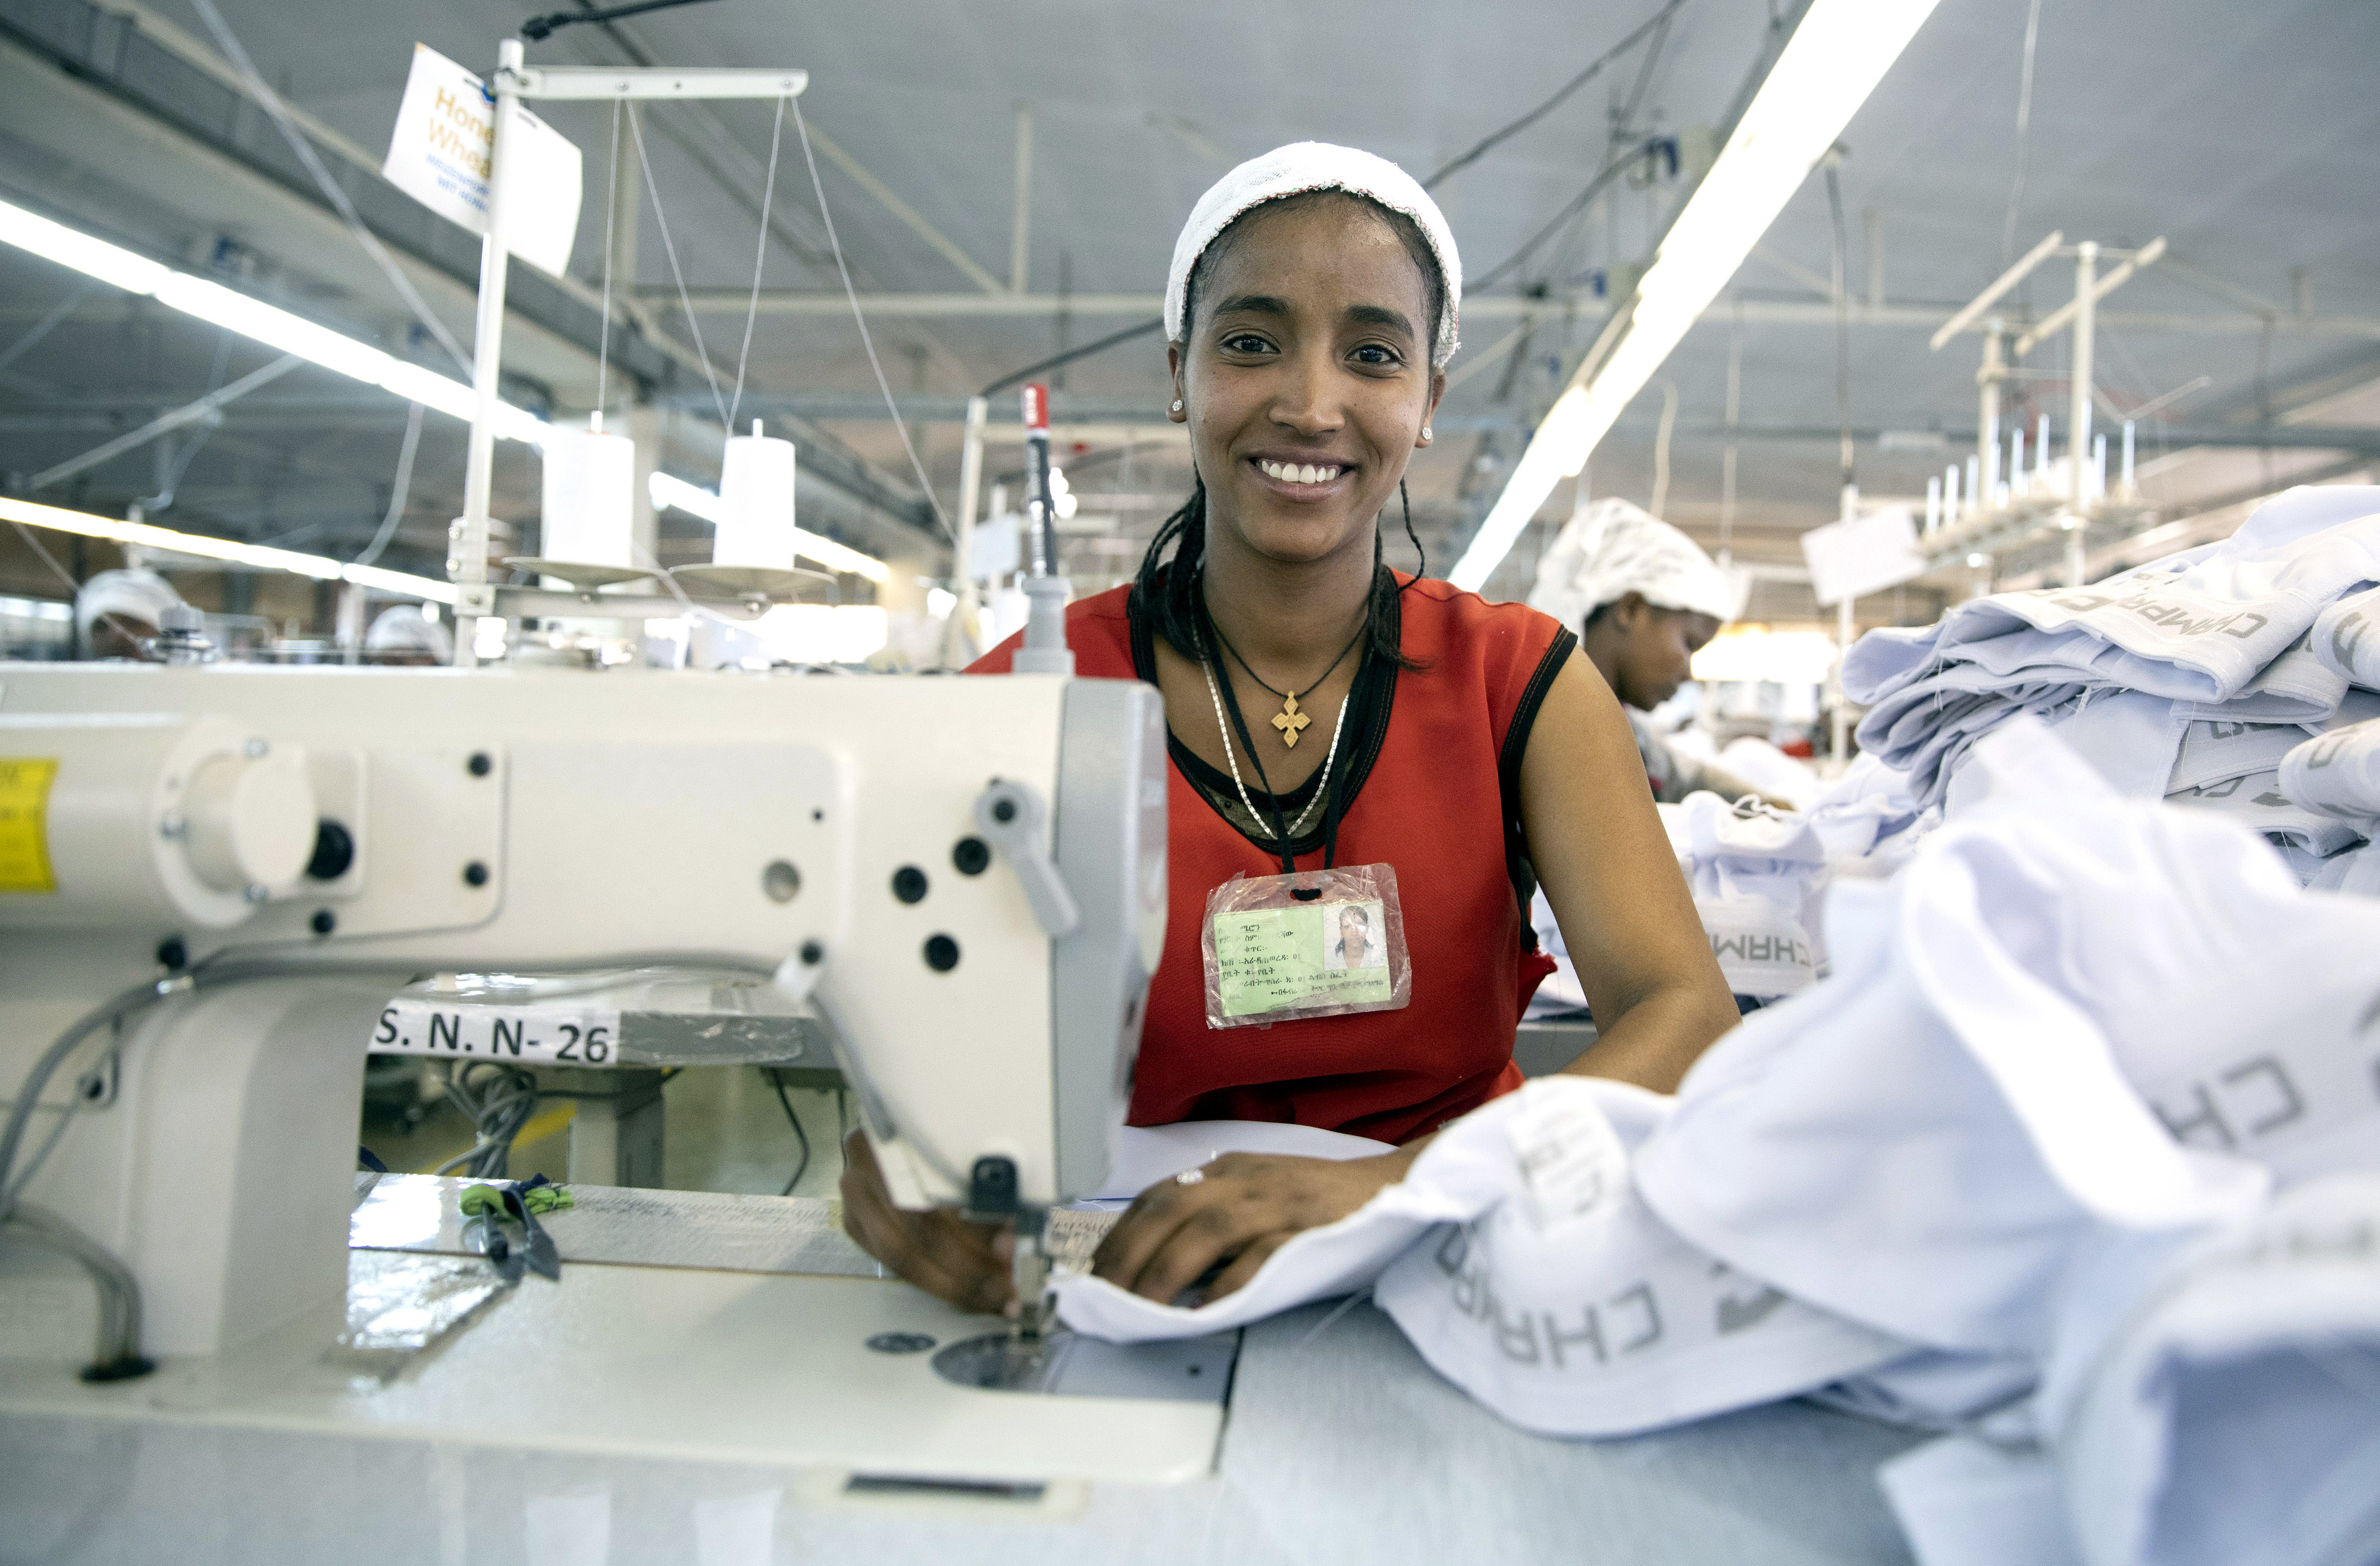 Näherin in der Textilfabrik der Firma Desta Garment in Addis Abeba, die für eine deutsche Handelskette produziert, Äthiopien, 2.12.2019